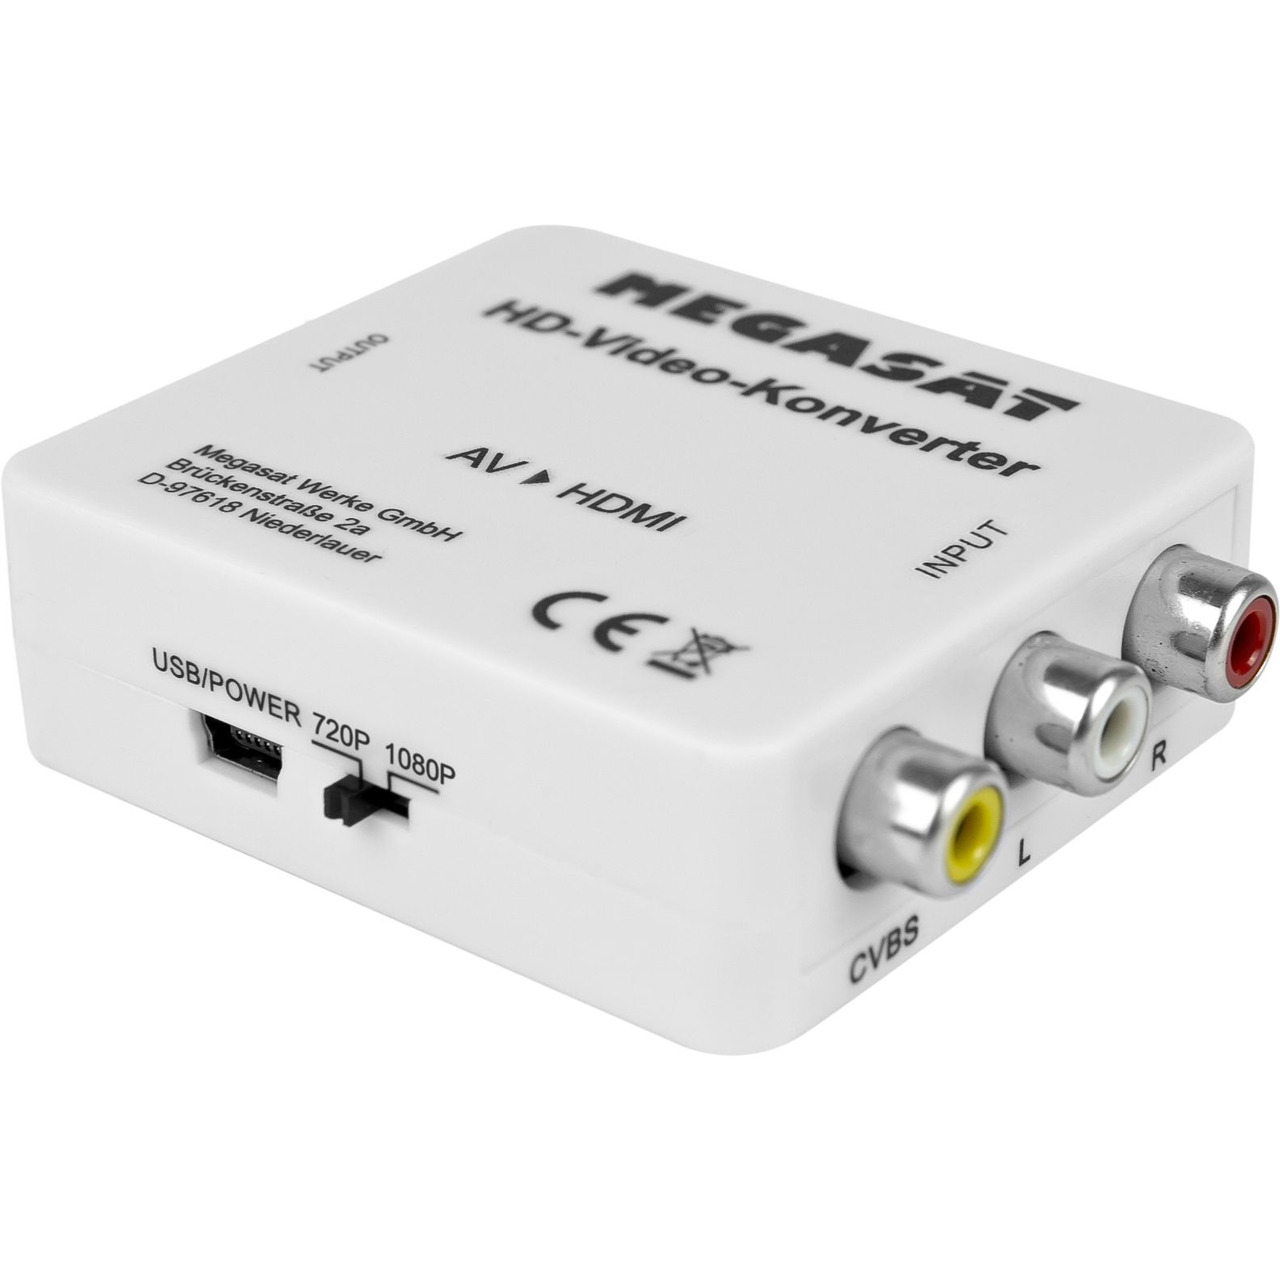 Megasat AV-zu-HDMI-Konverter- Plug und Play- HDMI 1-3- AV-HDMI-Adapter- 720p-1080p unter Multimedia